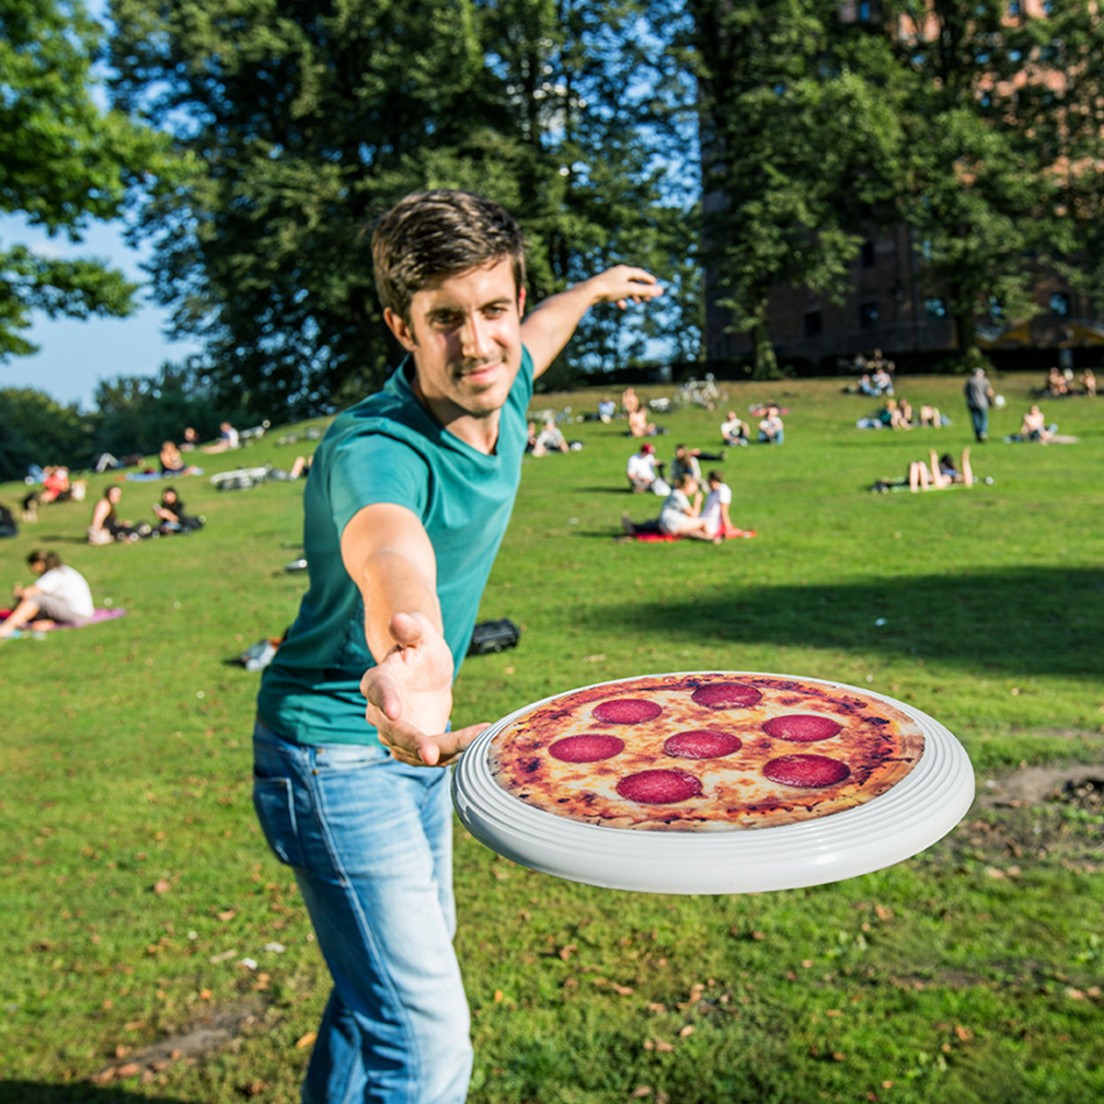 Frisbee - El más divertido para el verano